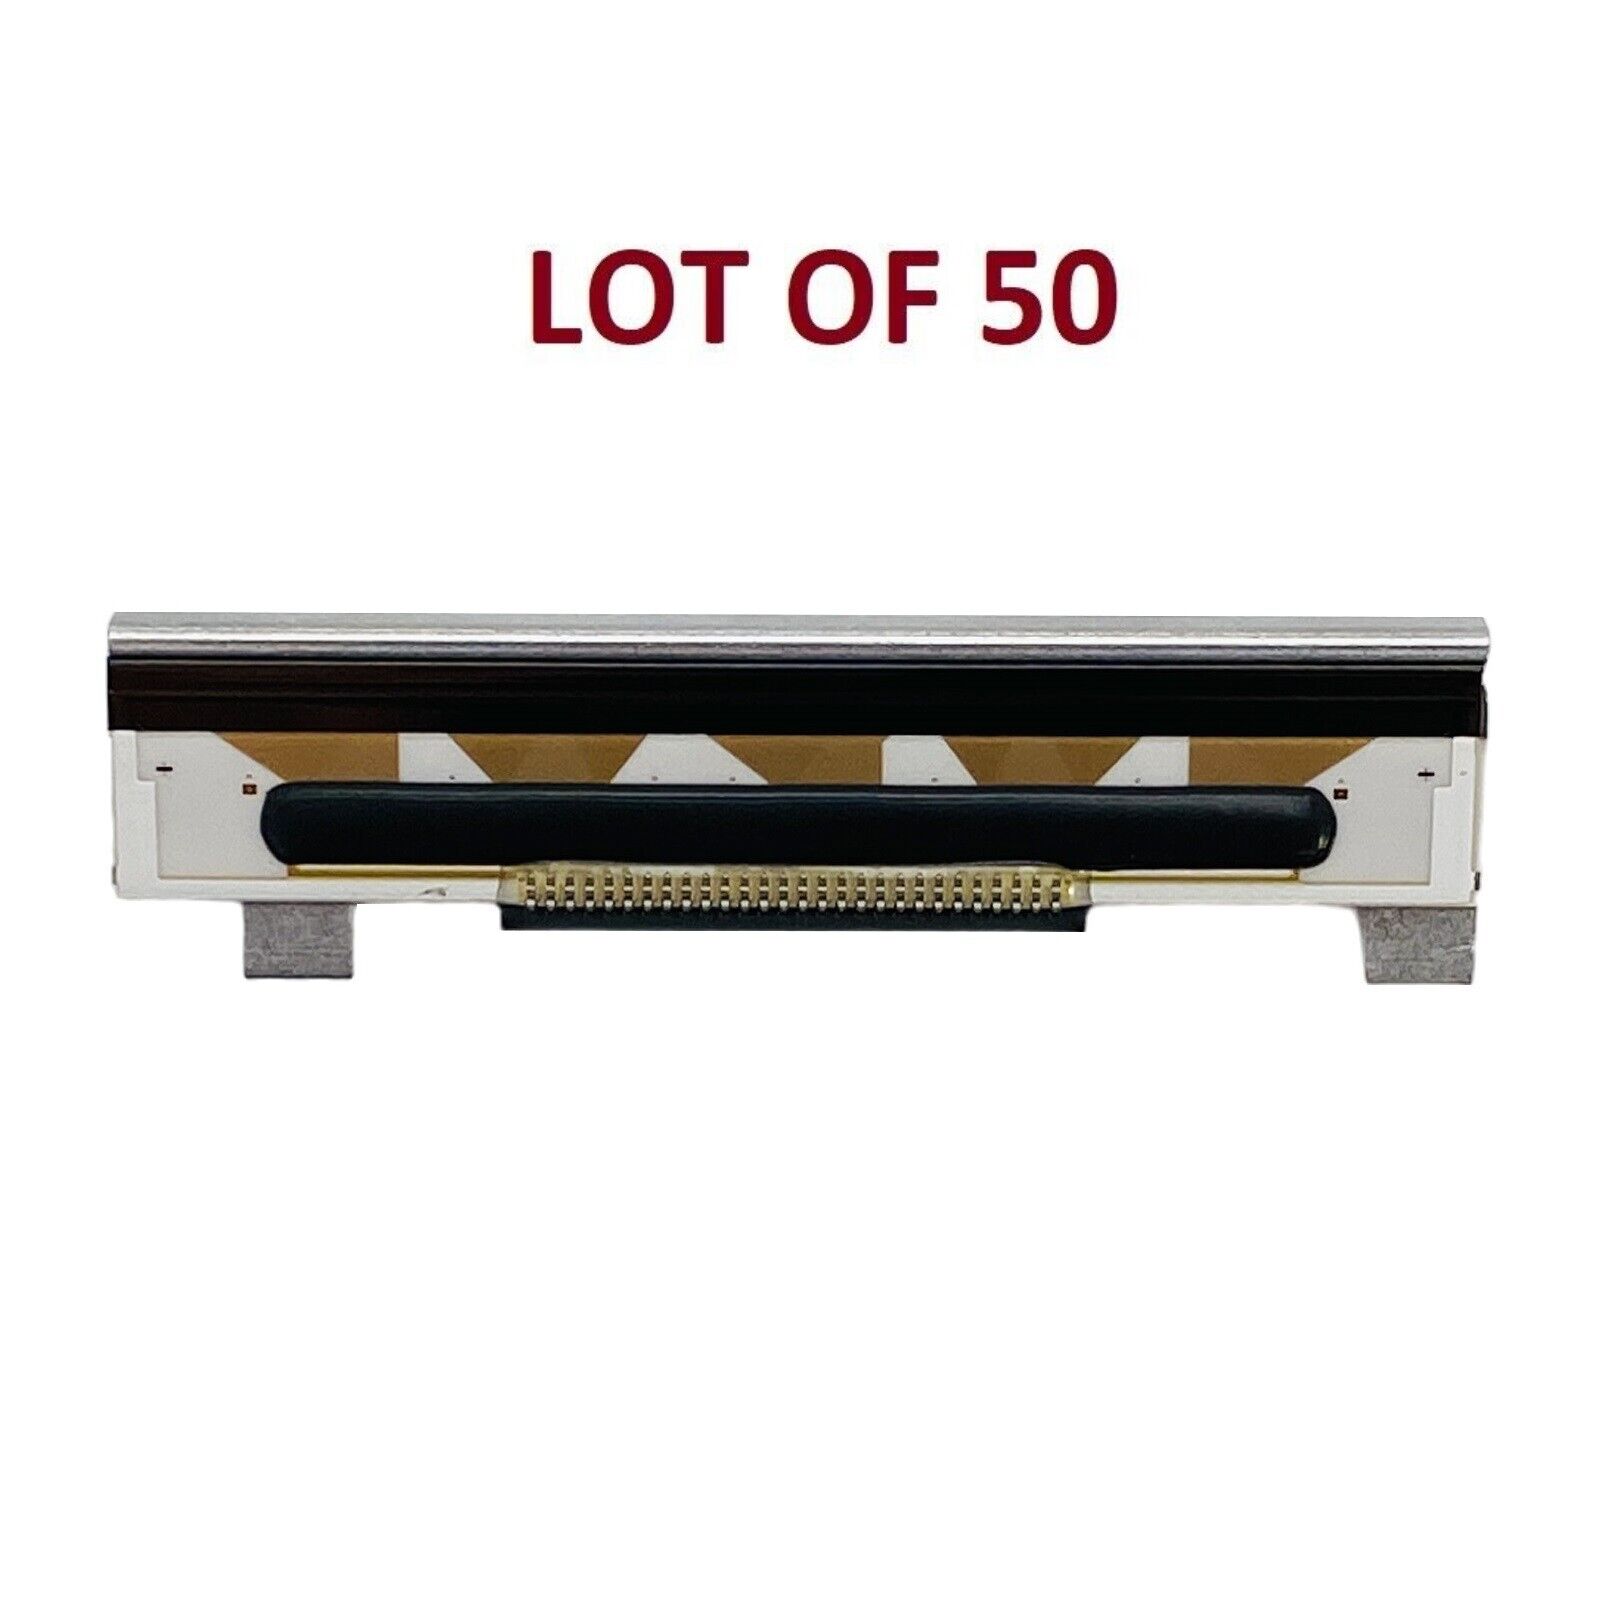 🔥LOT OF 50 TESTED🔥 Genuine IBM 203 dpi Printhead for 4610-2CR 4610-2NR Printer